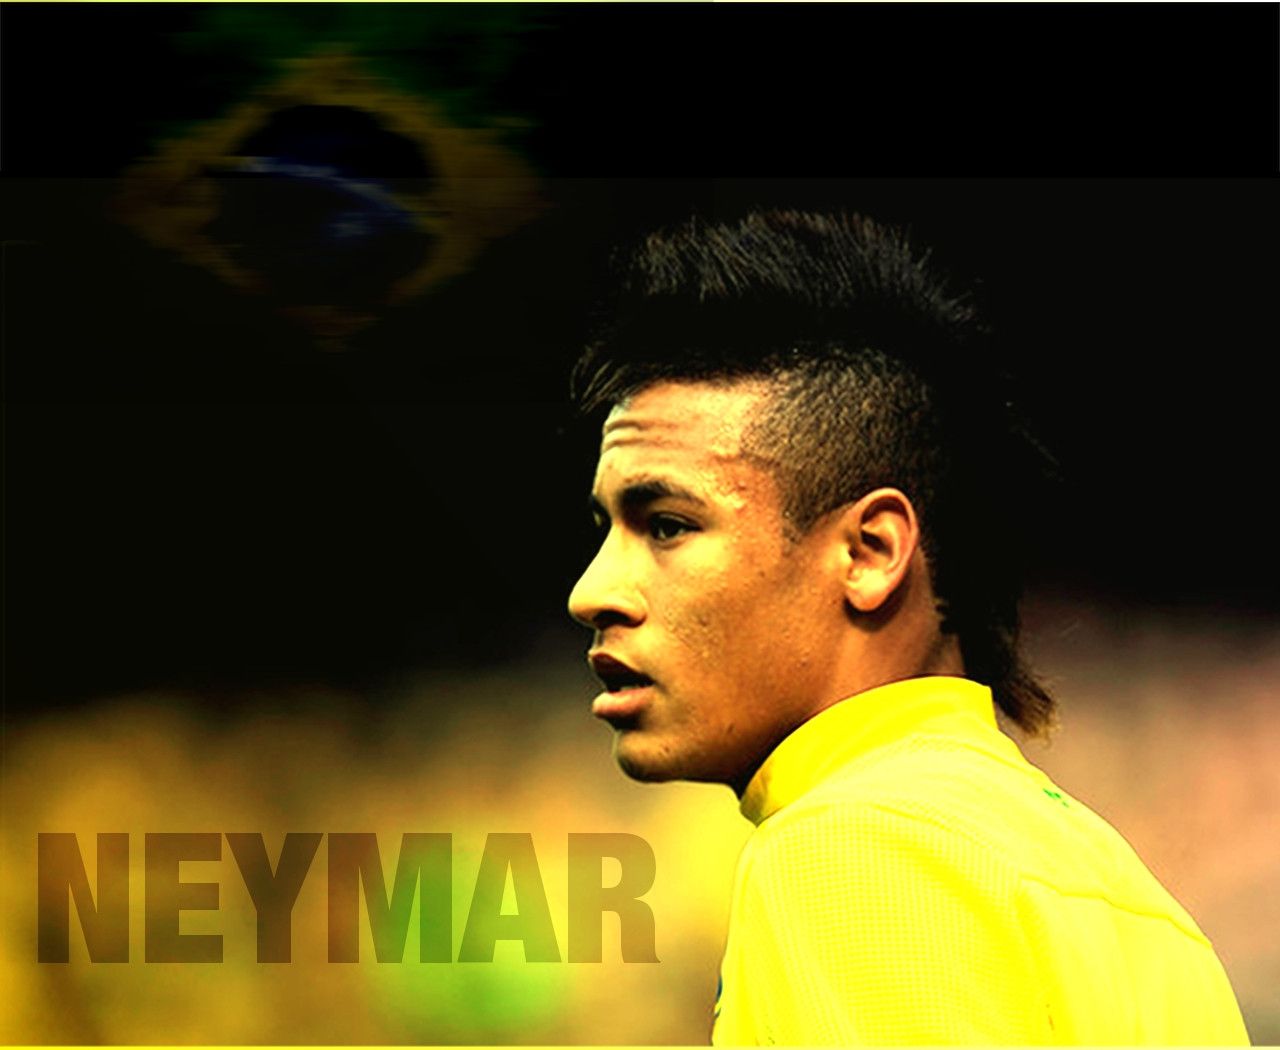 Neymar Wallpaper HD Football Player Brazil